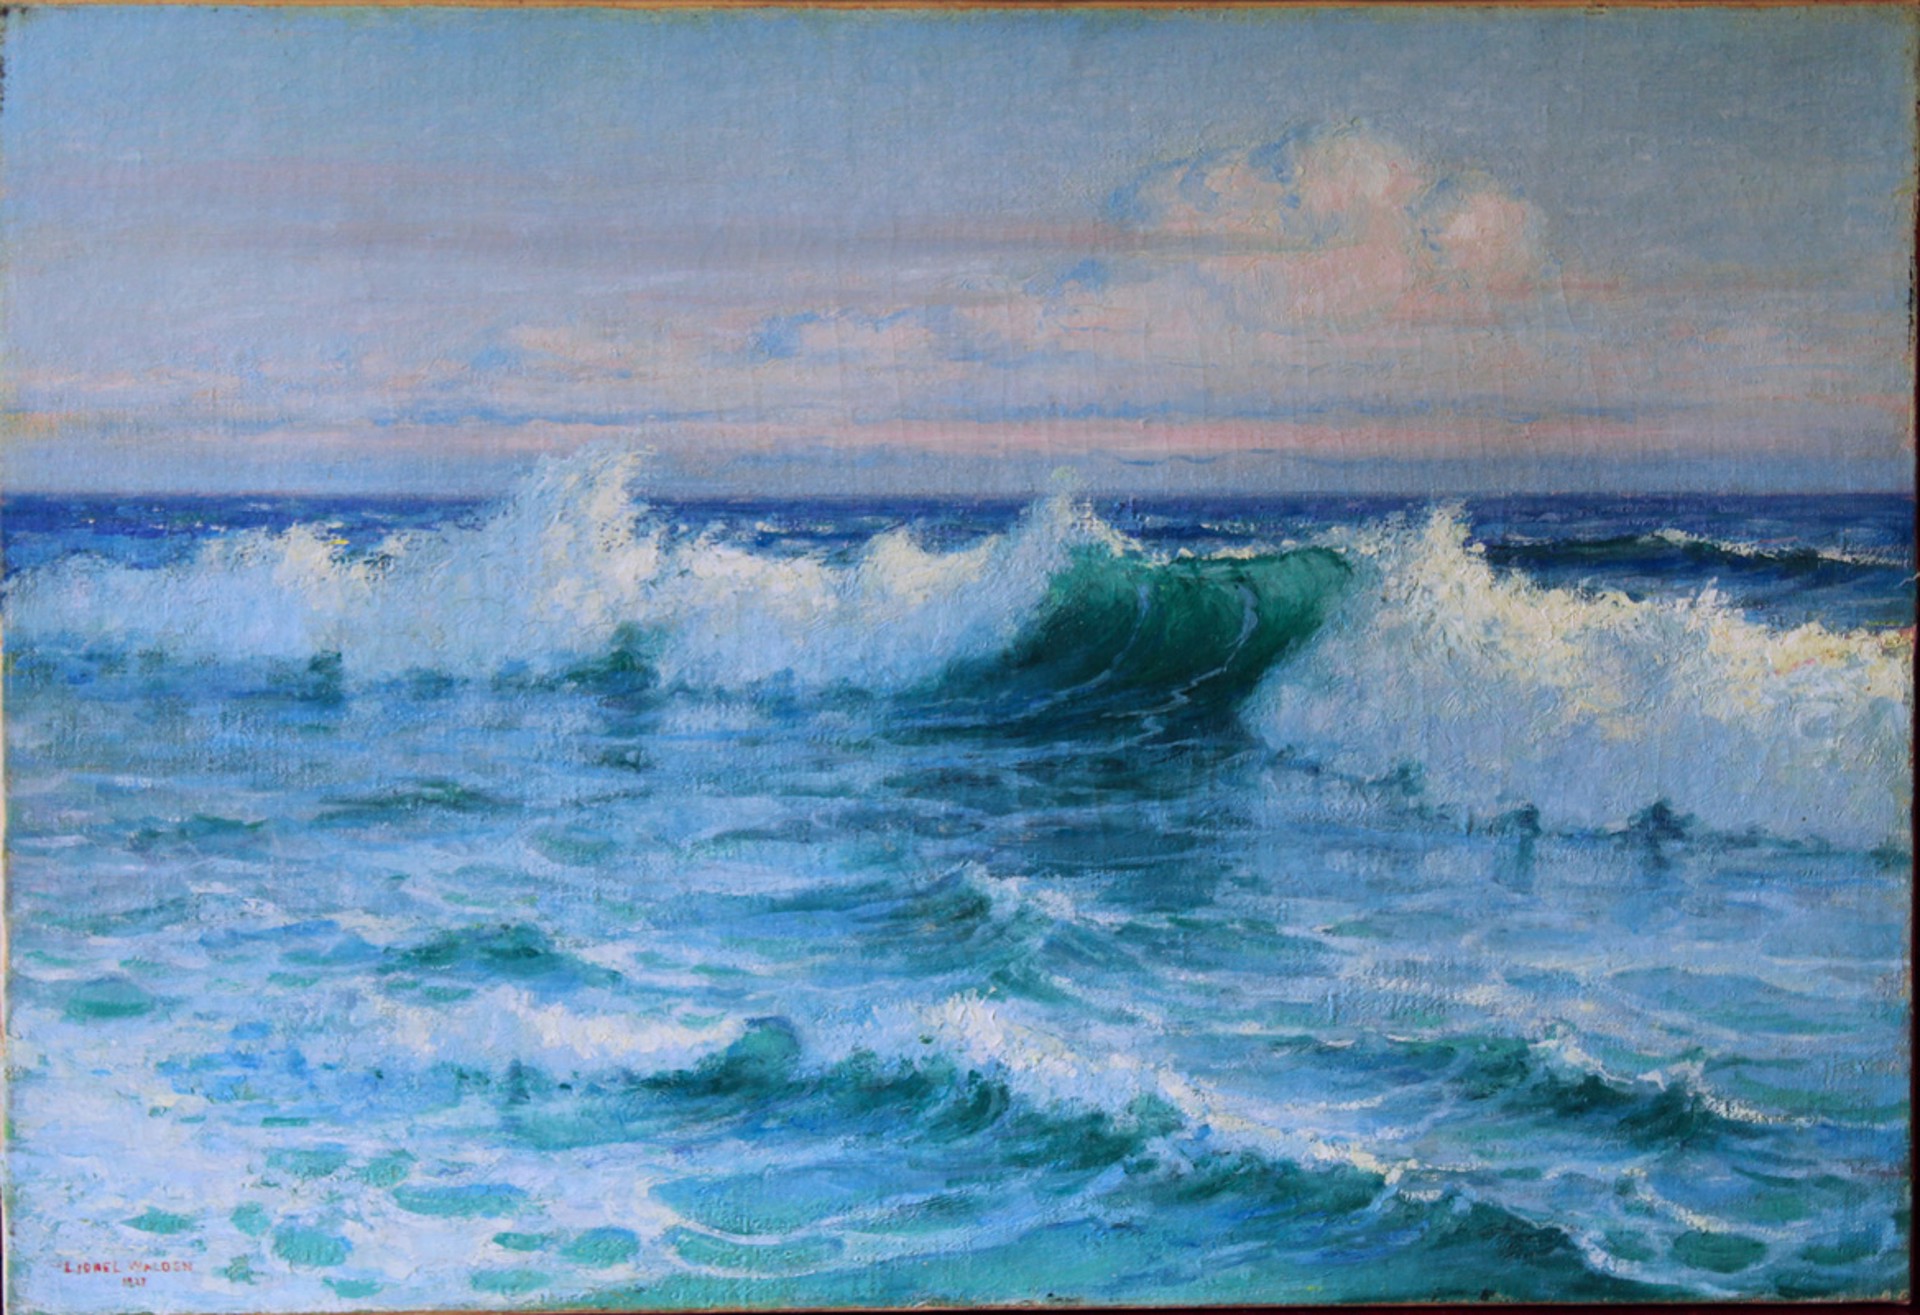 Breaking Wave, Oahu by Lionel Walden